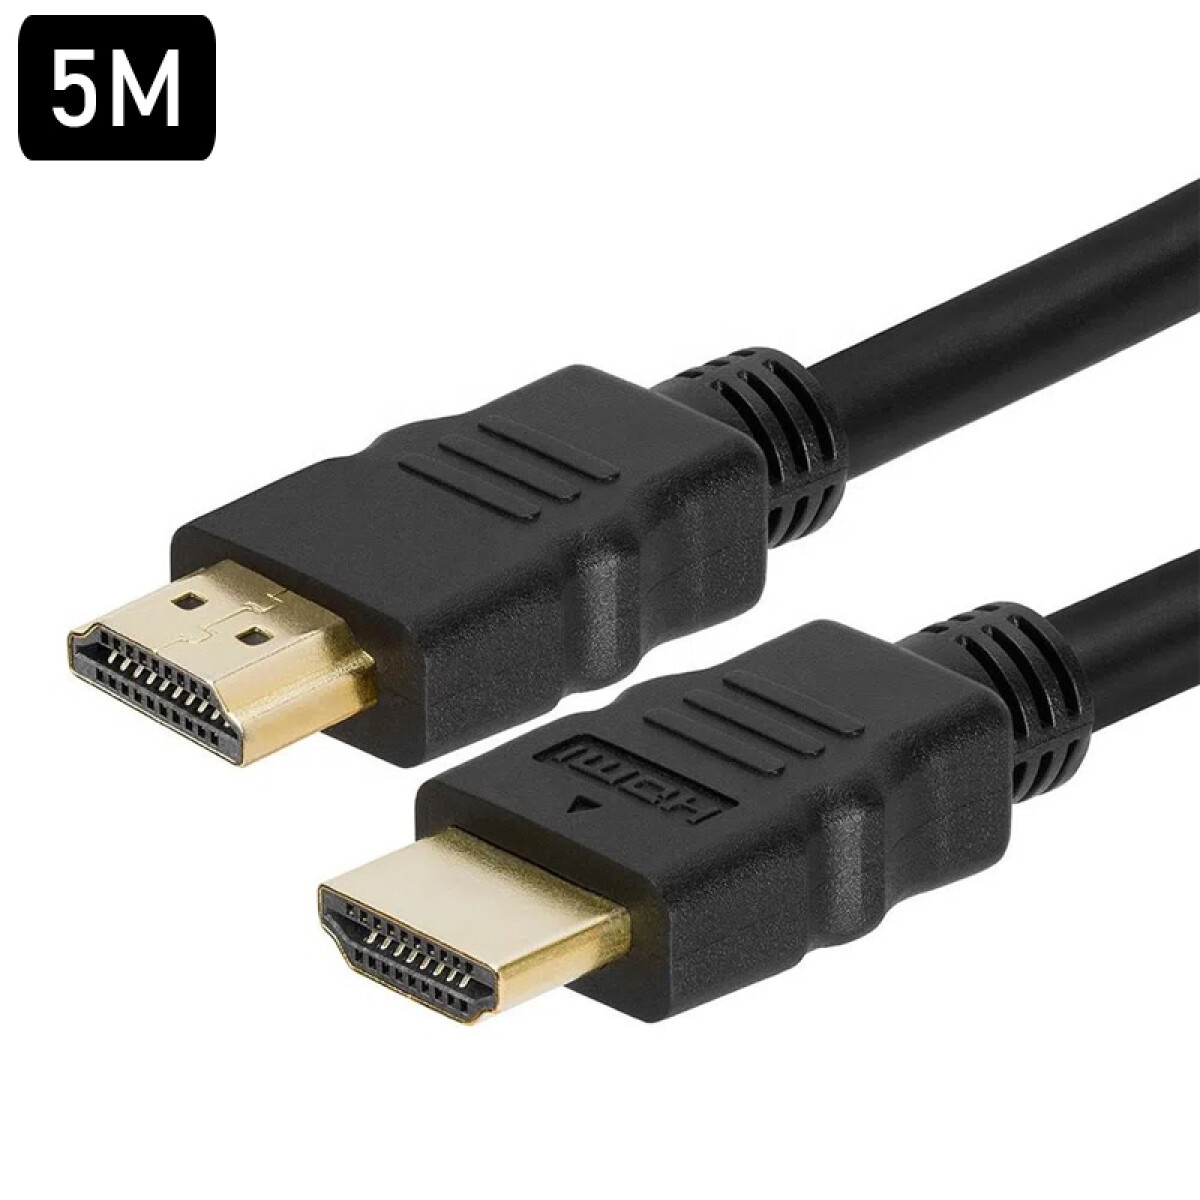 Cable HDMI 5M 4K - Unica 